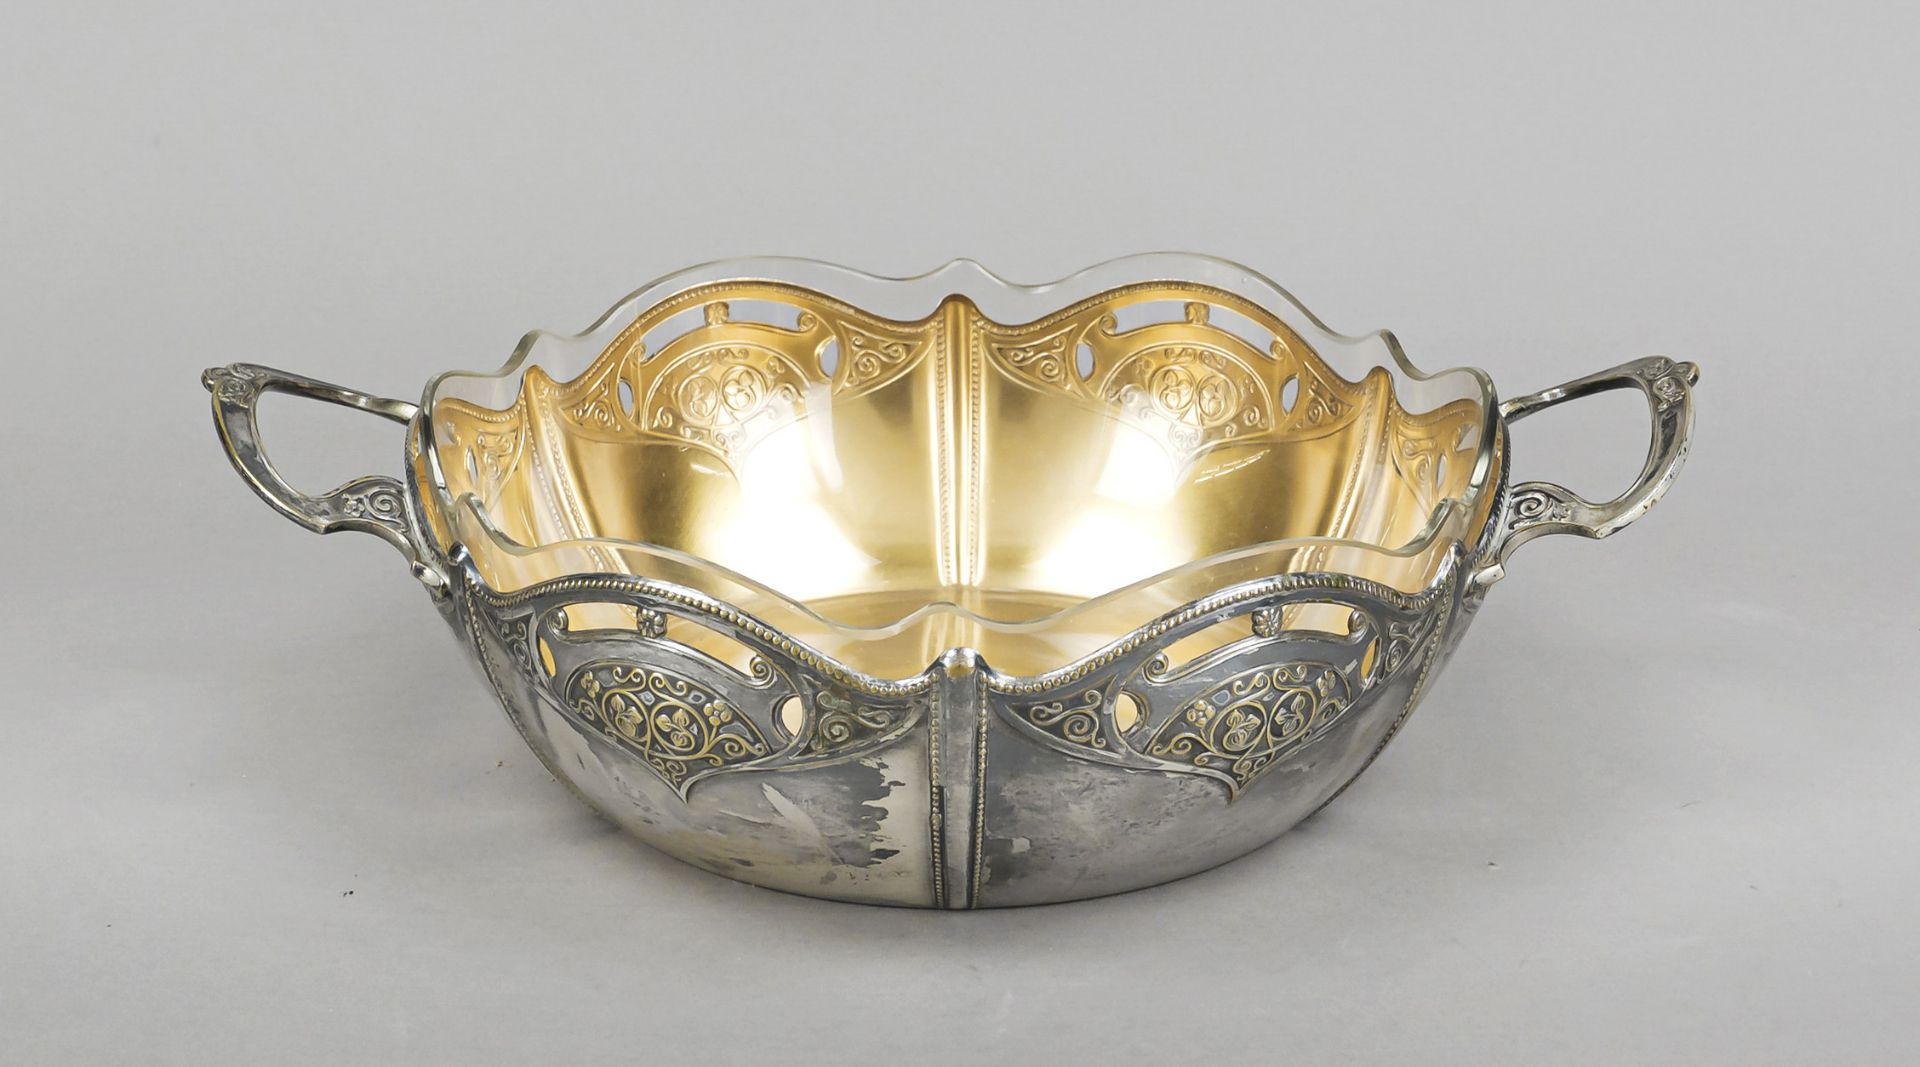 A round Art Nouveau bowl, German, c. 1900, maker's mark WMF, Geislingen, ostrich mark, plated,